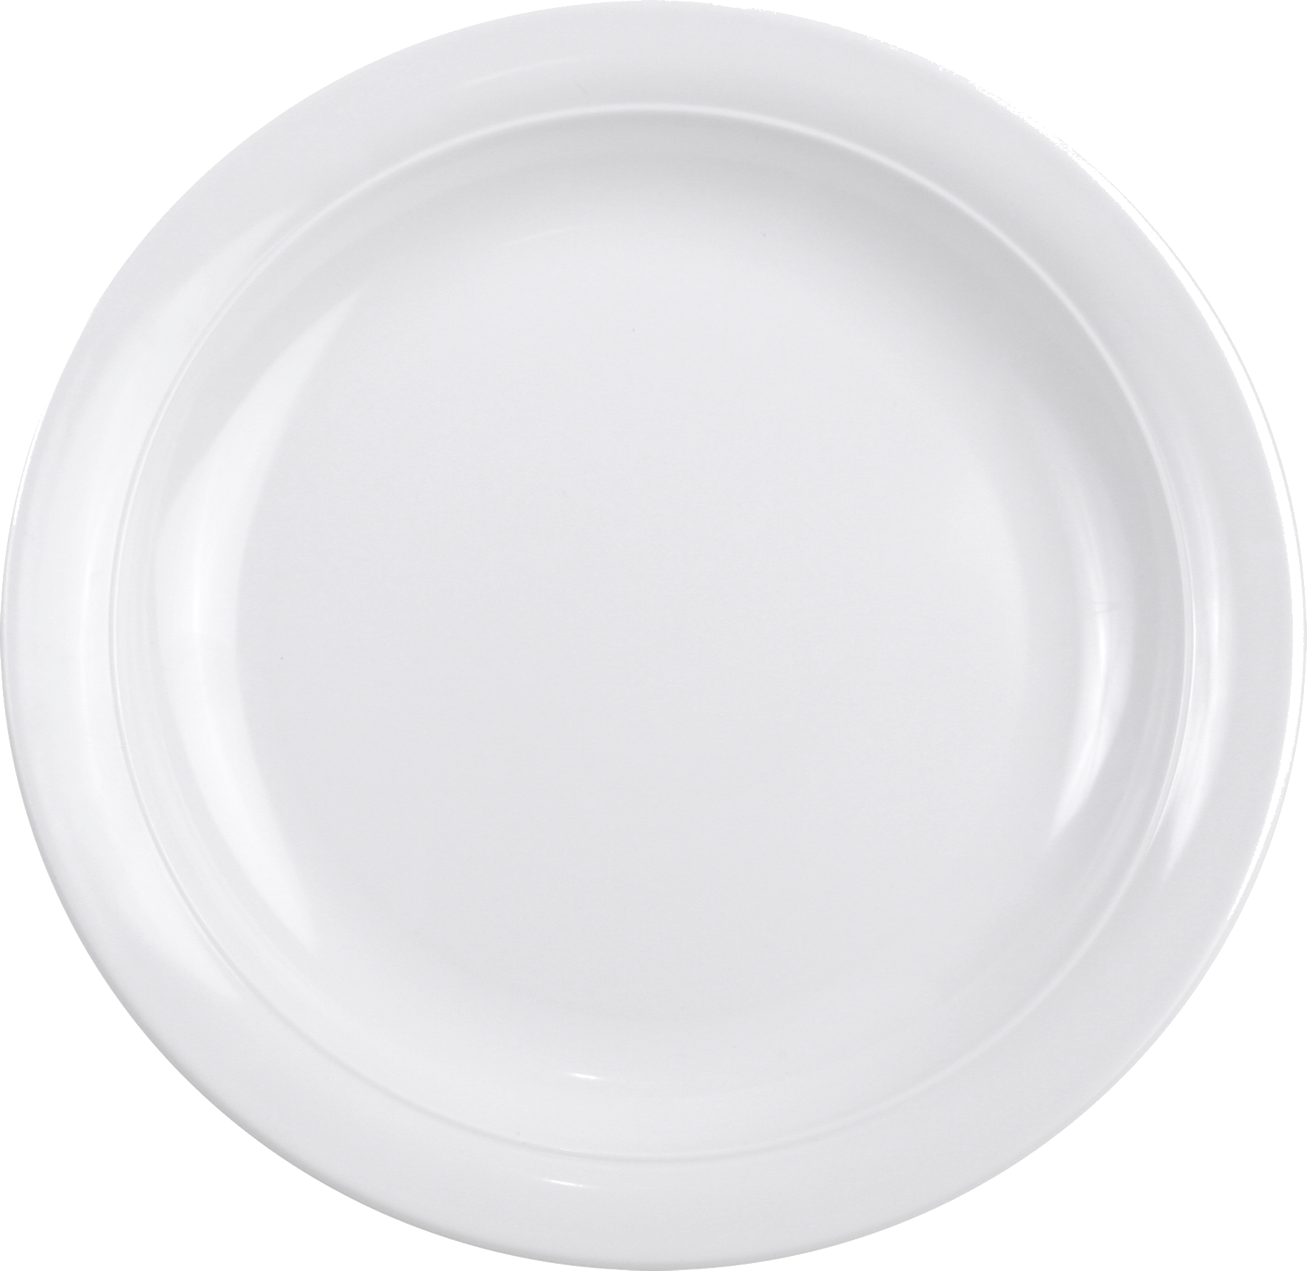 白色陶瓷碟子和杯子